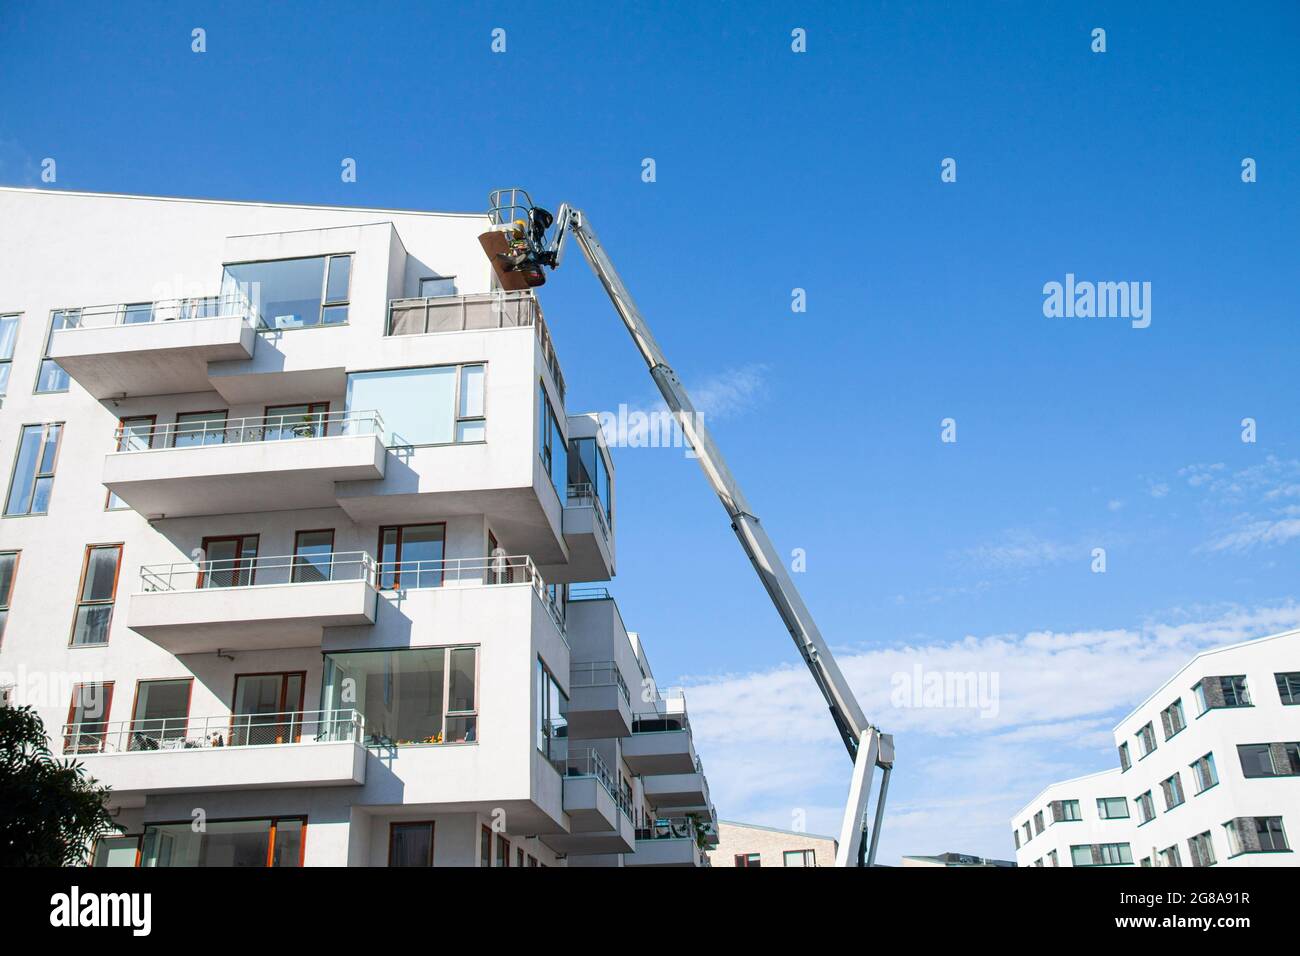 Ouvriers d'entretien travaillant en hauteur à partir d'une rampe articulée, réparant la façade d'un bâtiment résidentiel. Fond bleu ciel. Barre omnibus industrielle Banque D'Images